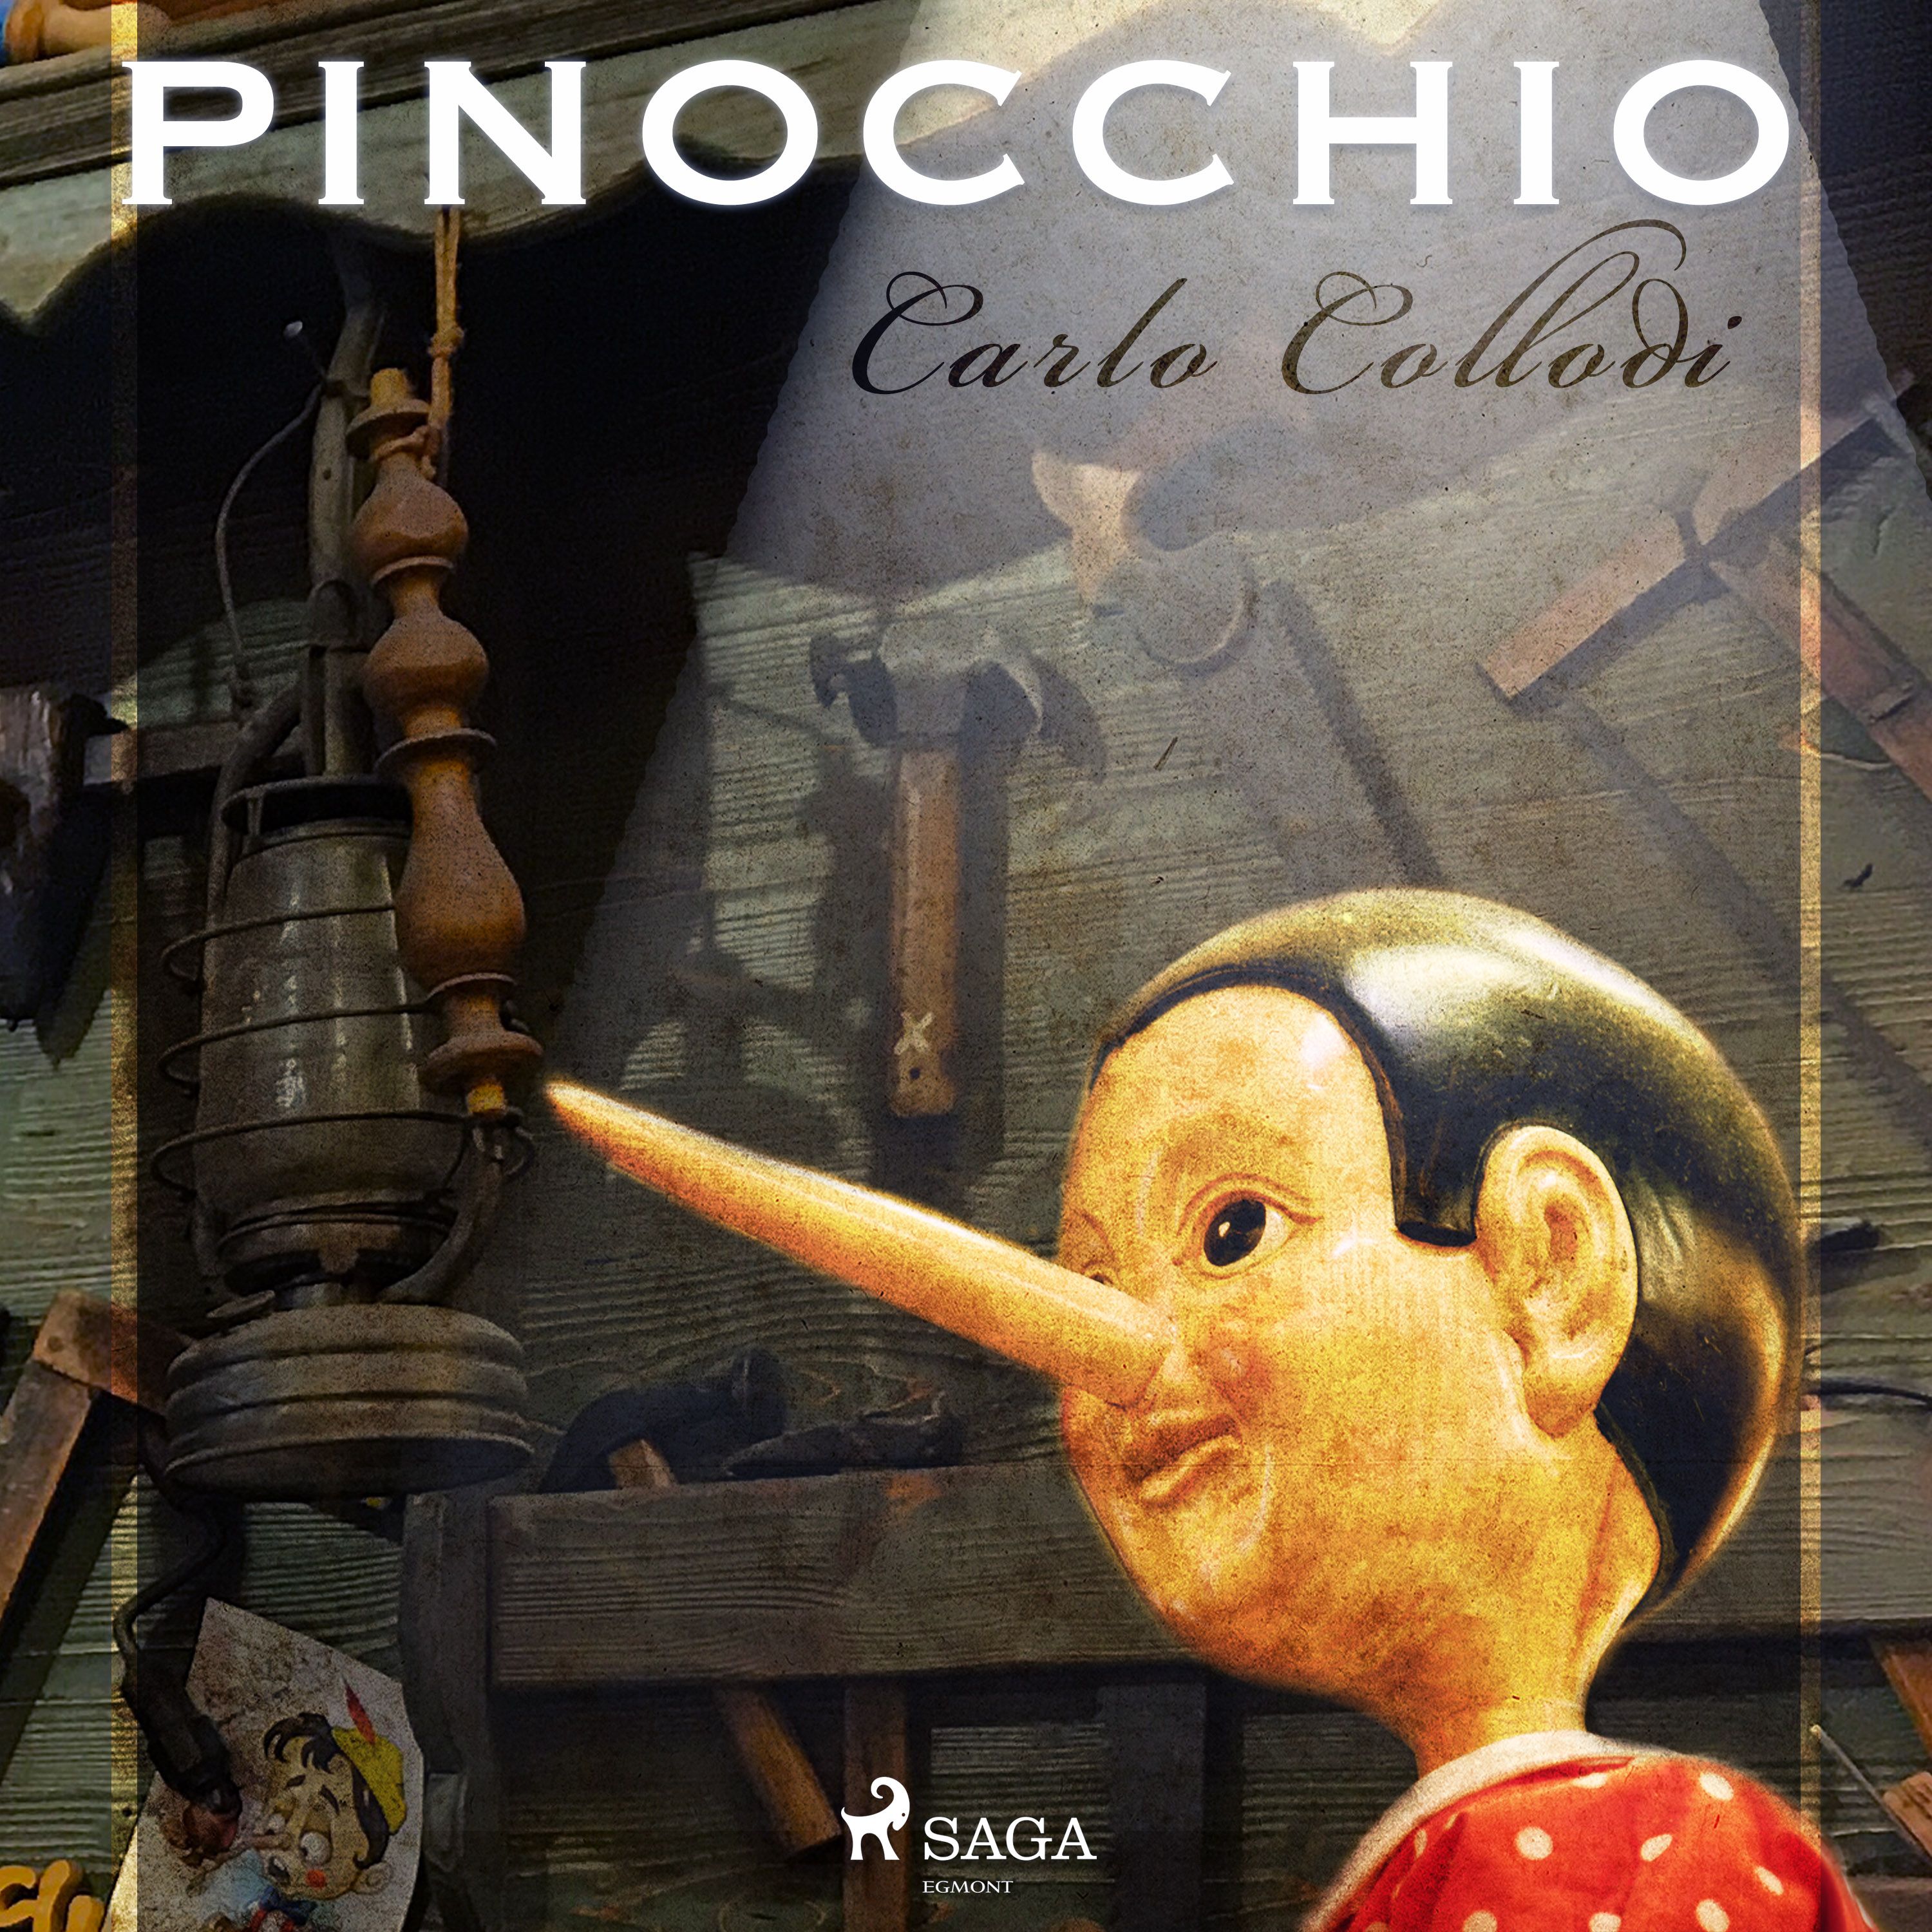 Pinocchio, ljudbok av Carlo Collodi